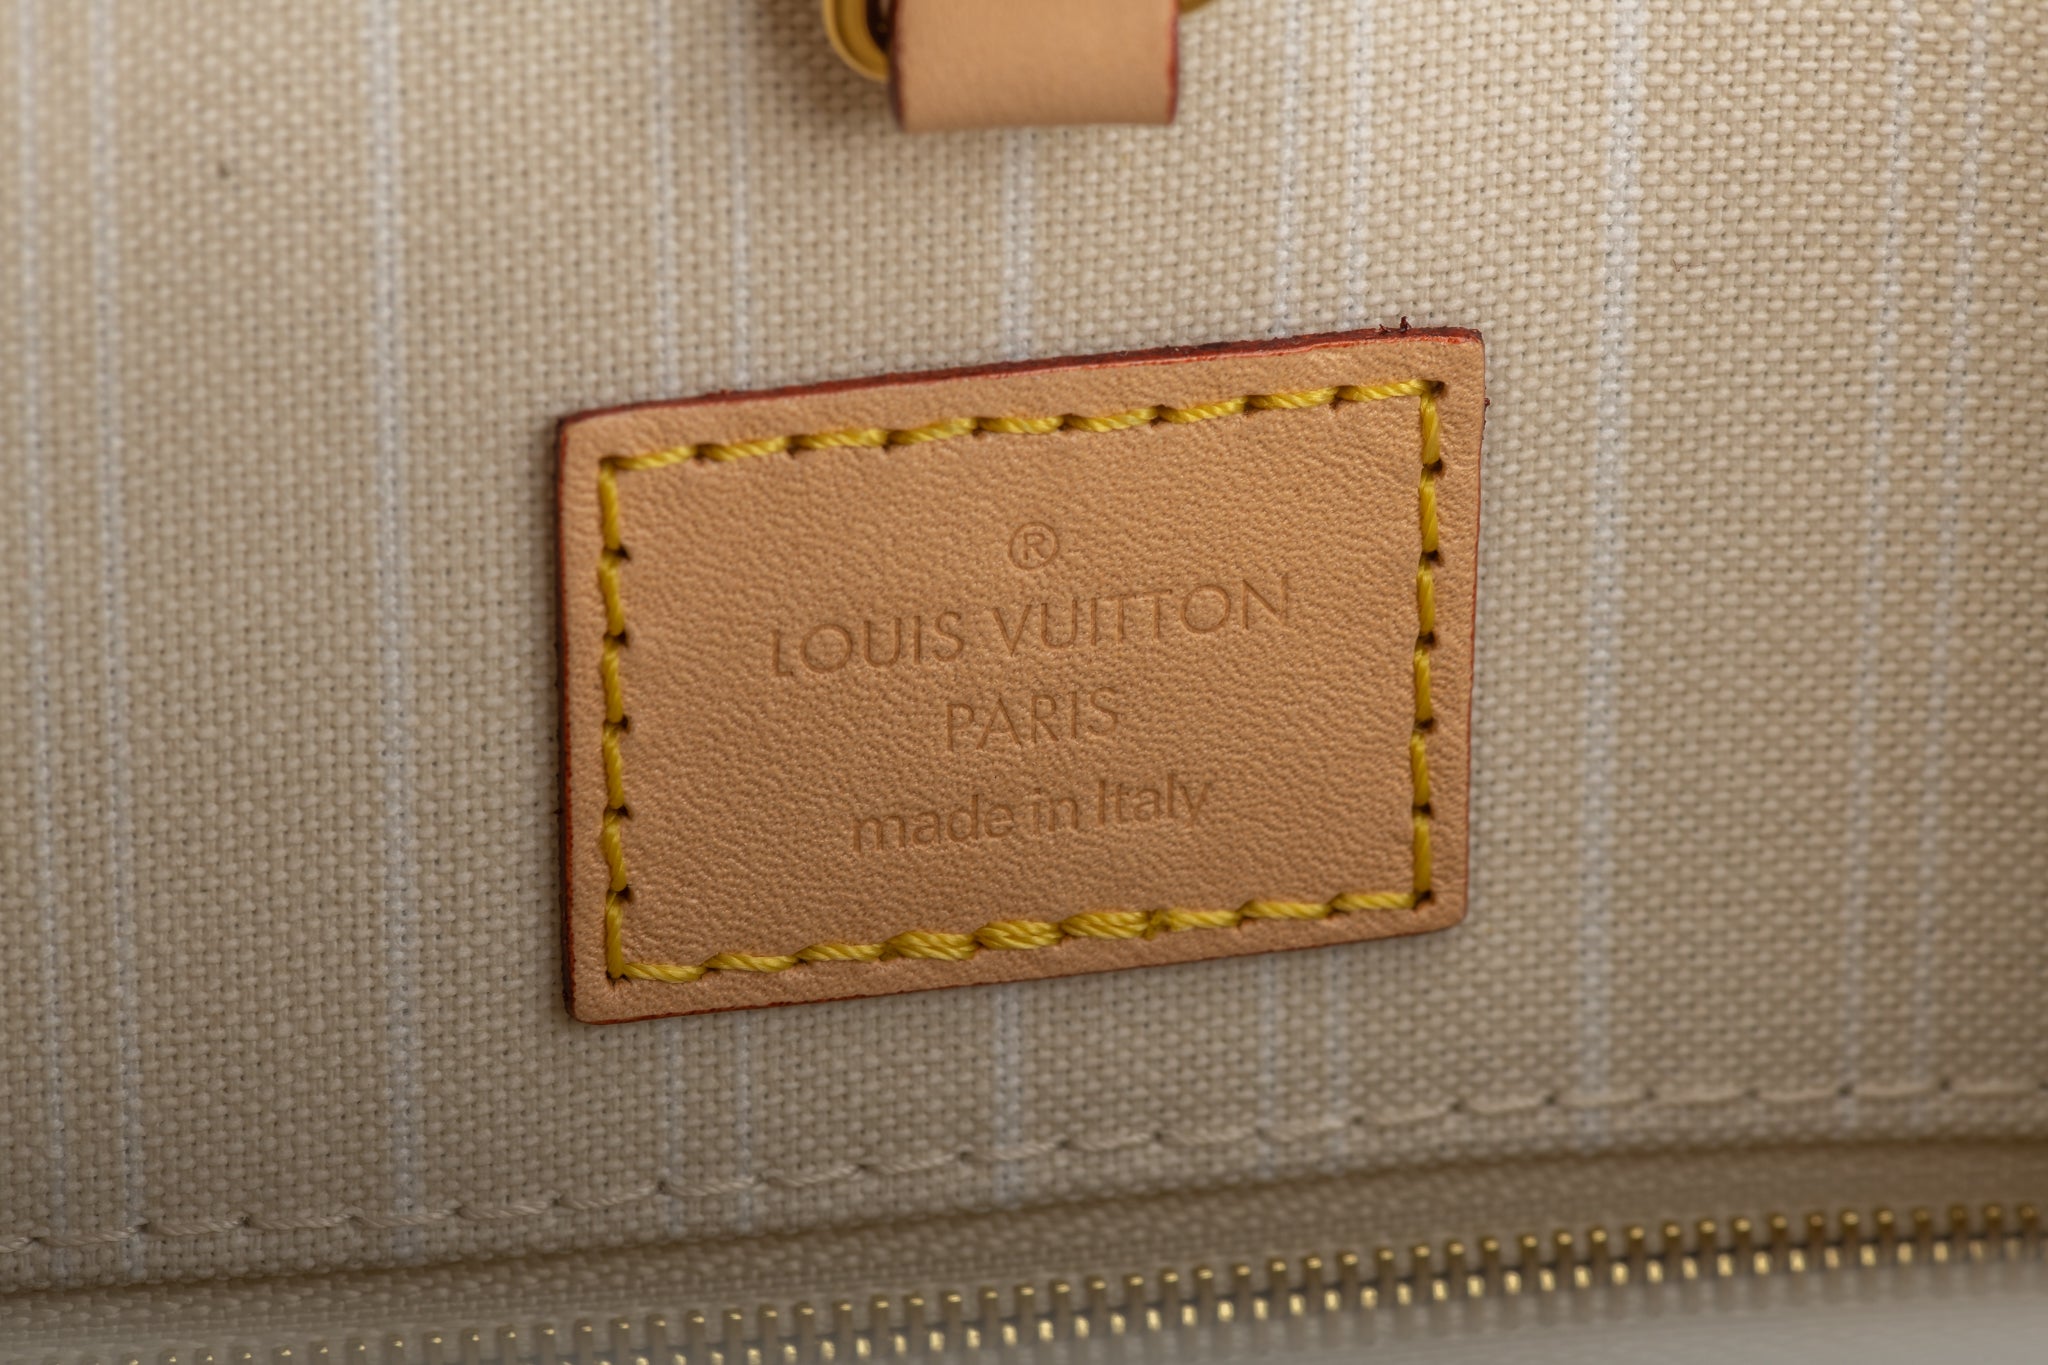 Vuitton St Tropez On The Go Lim. Ed. - Vintage Lux